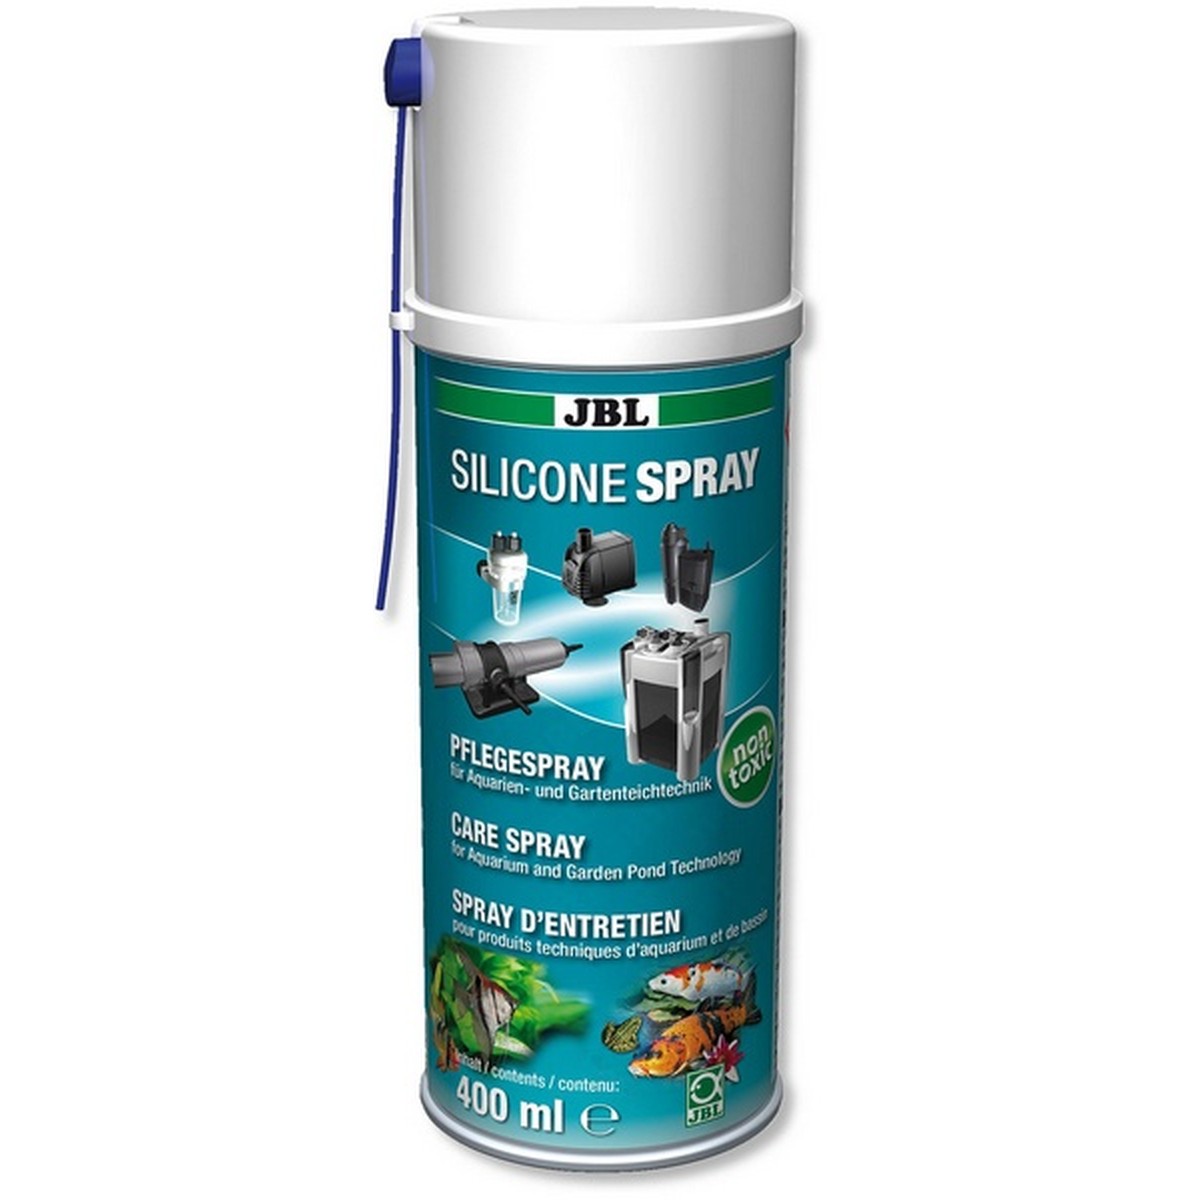   JBL Silicone Spray 400 ml  400ml